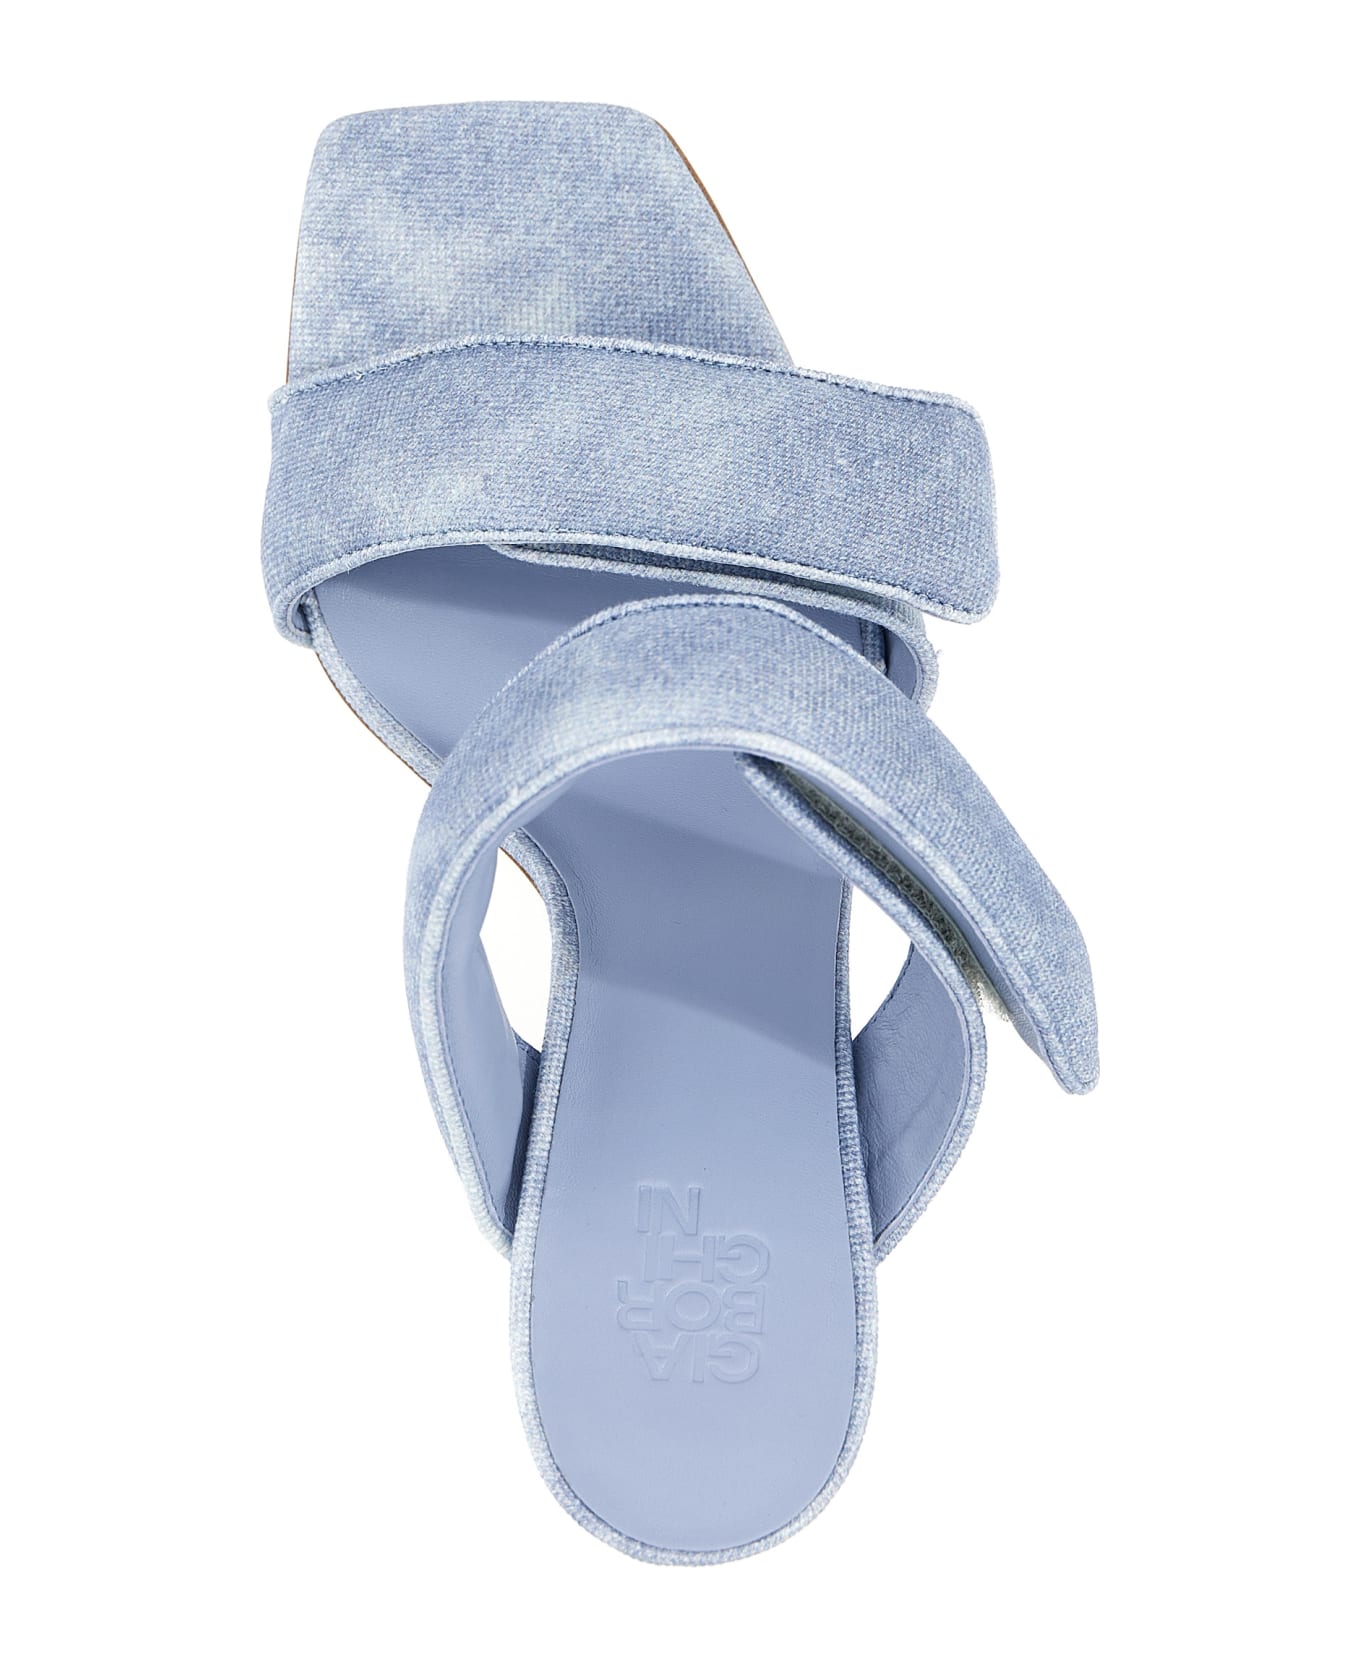 GIA BORGHINI X Pernille Teisbaek 'perni 03' Sandals - Light Blue